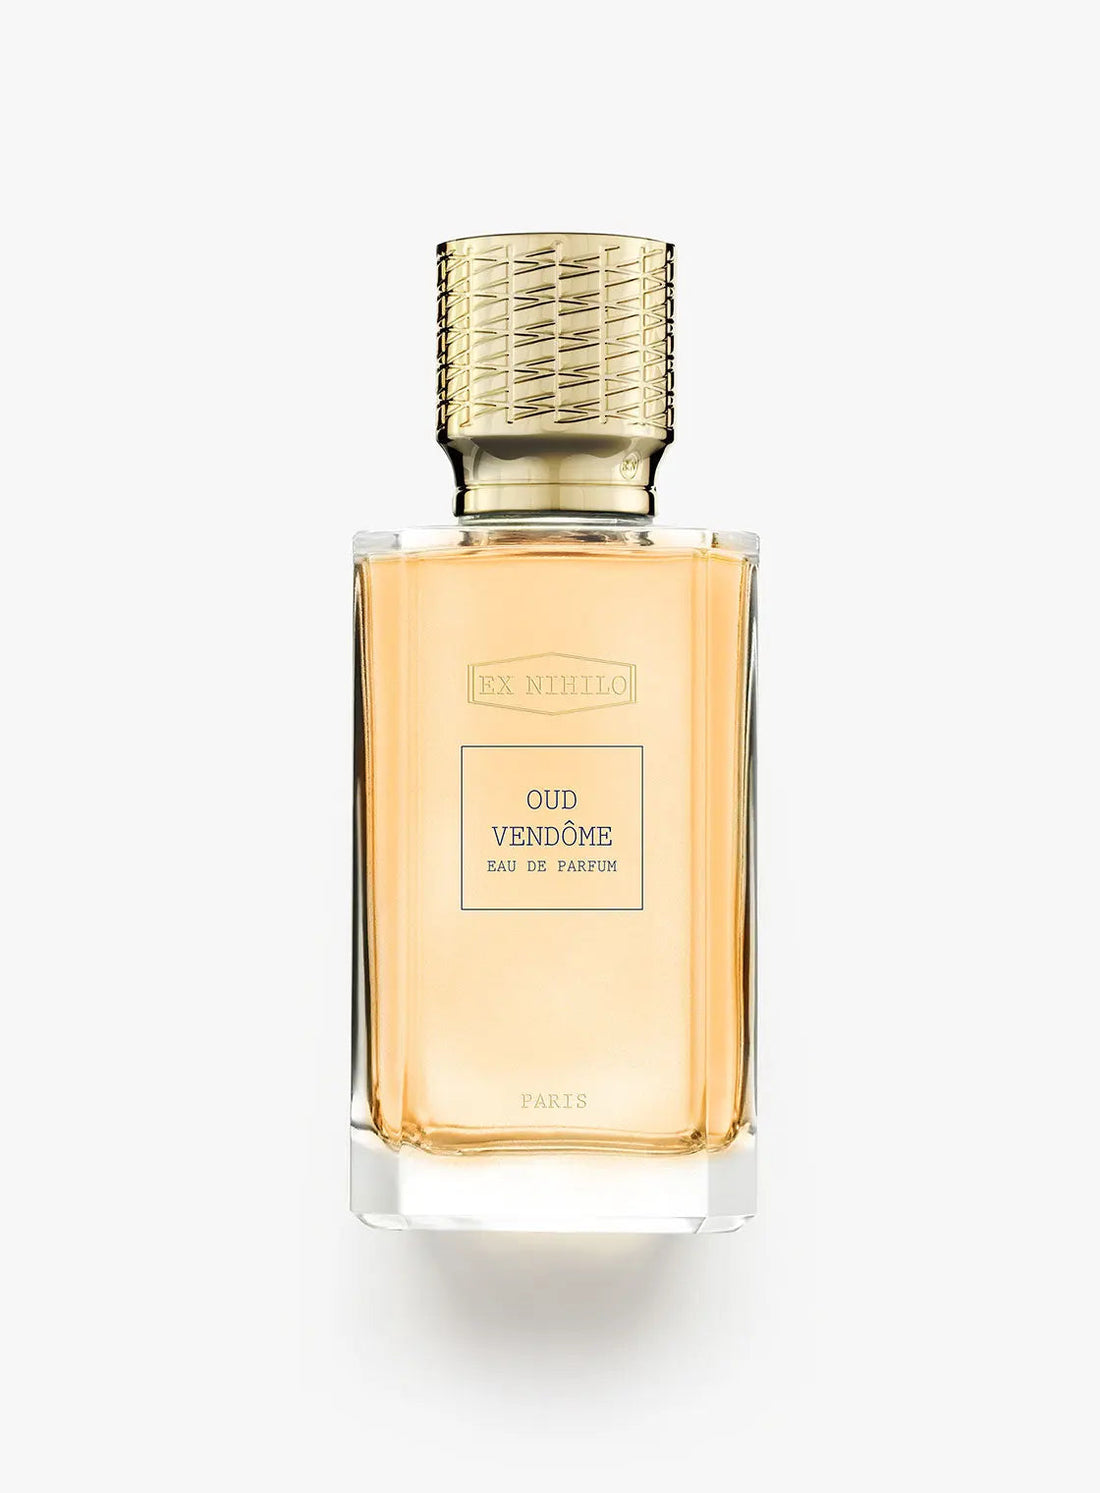 Ex nihilo Oud Vendome Eau de Parfum - 100 ml